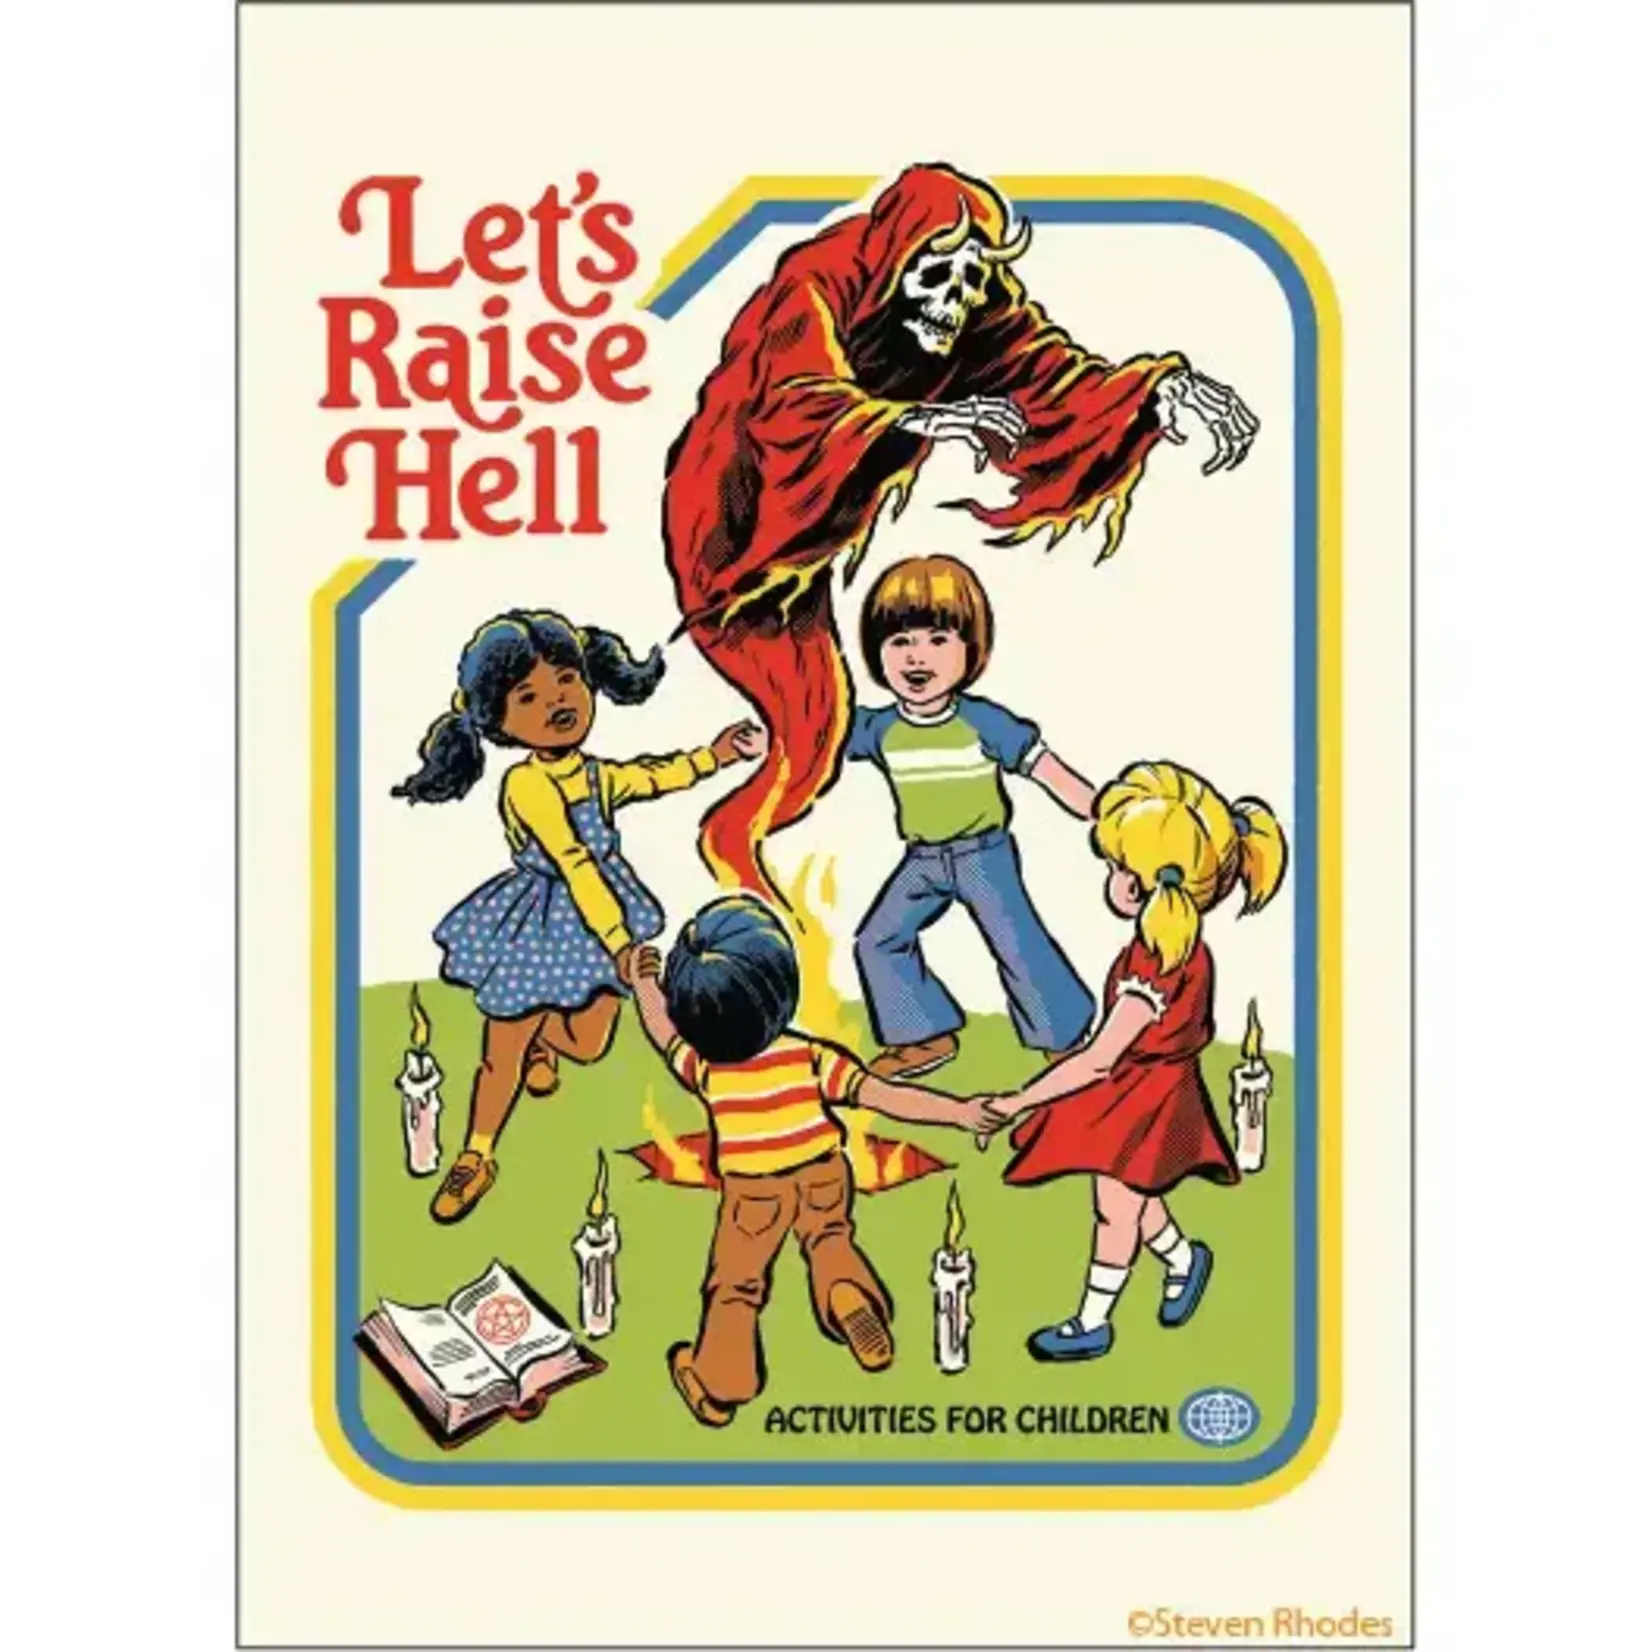 Magnet - Steven Rhodes: Let's Raise Hell Activities For Children